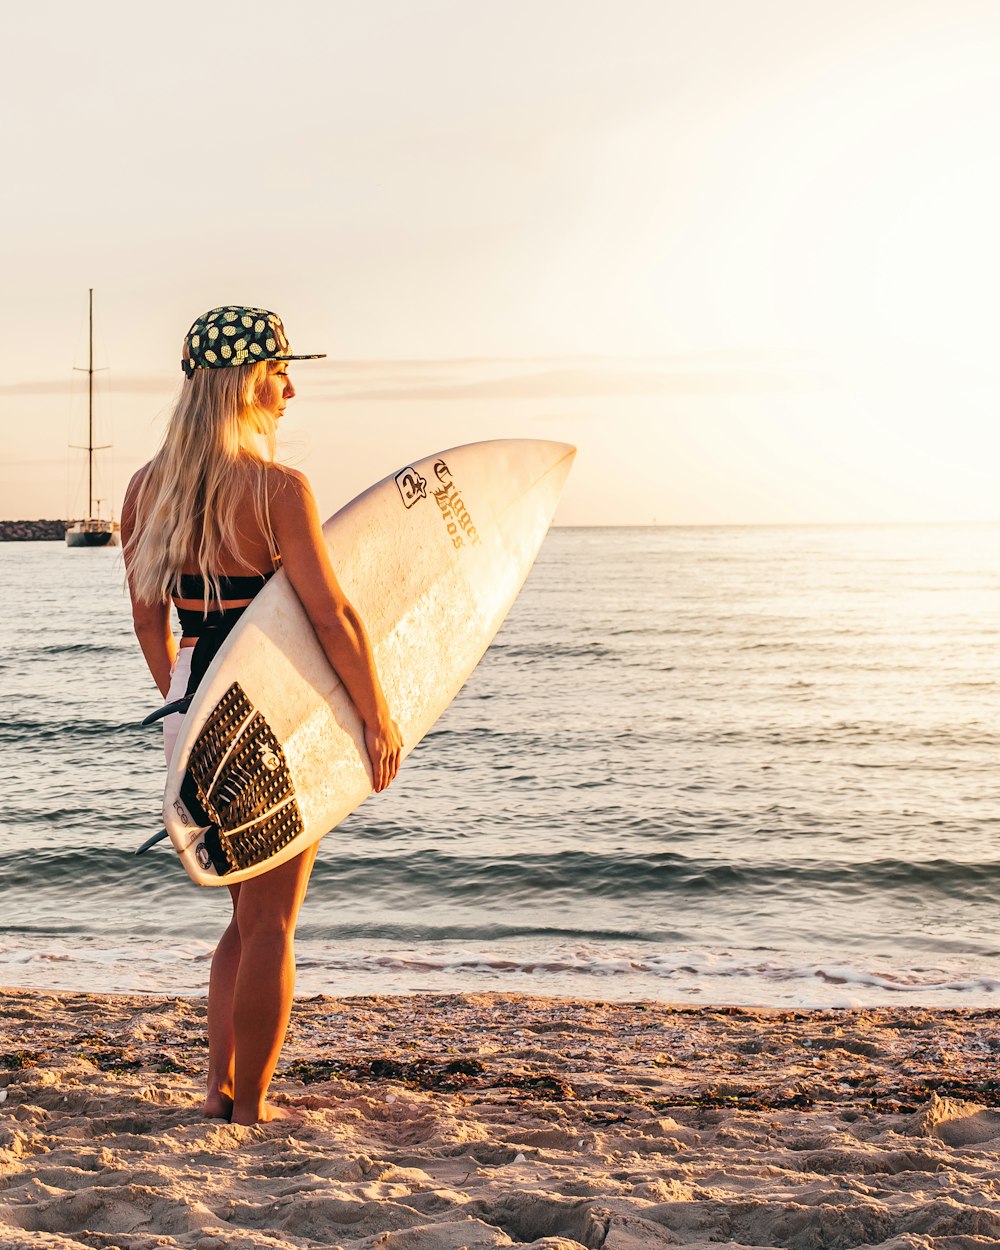 Frau im schwarzen Bikini mit Surfbrett, die tagsüber am Strand steht